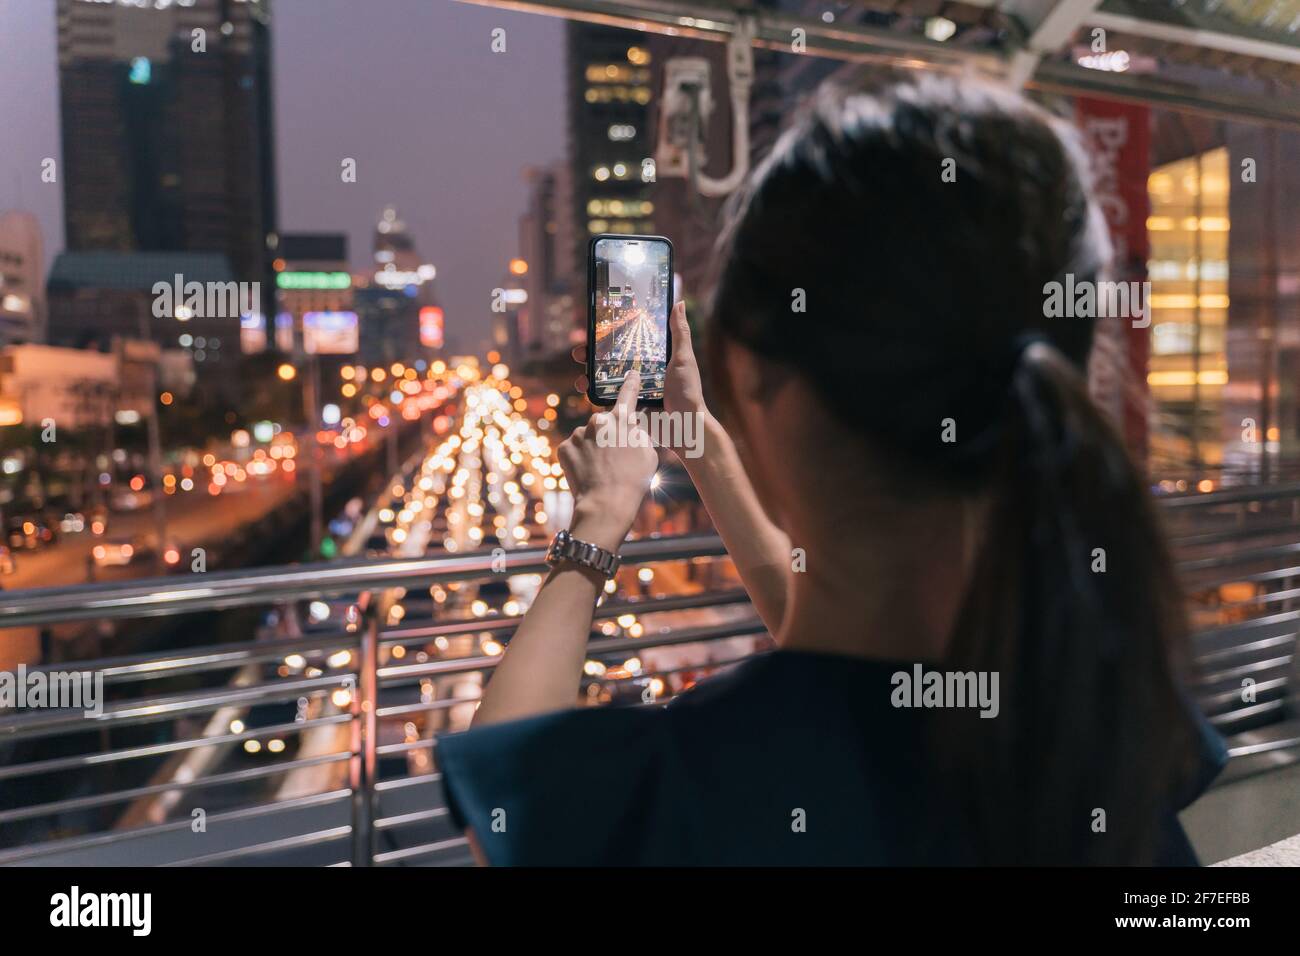 Rückansicht einer jungen, nicht erkennbaren Frau, die auf einer Fußgängerbrücke steht und dabei mitnimmt Bild der Abendansicht der Stadtstraße mit schönem Himmel Anzeigen Stockfoto